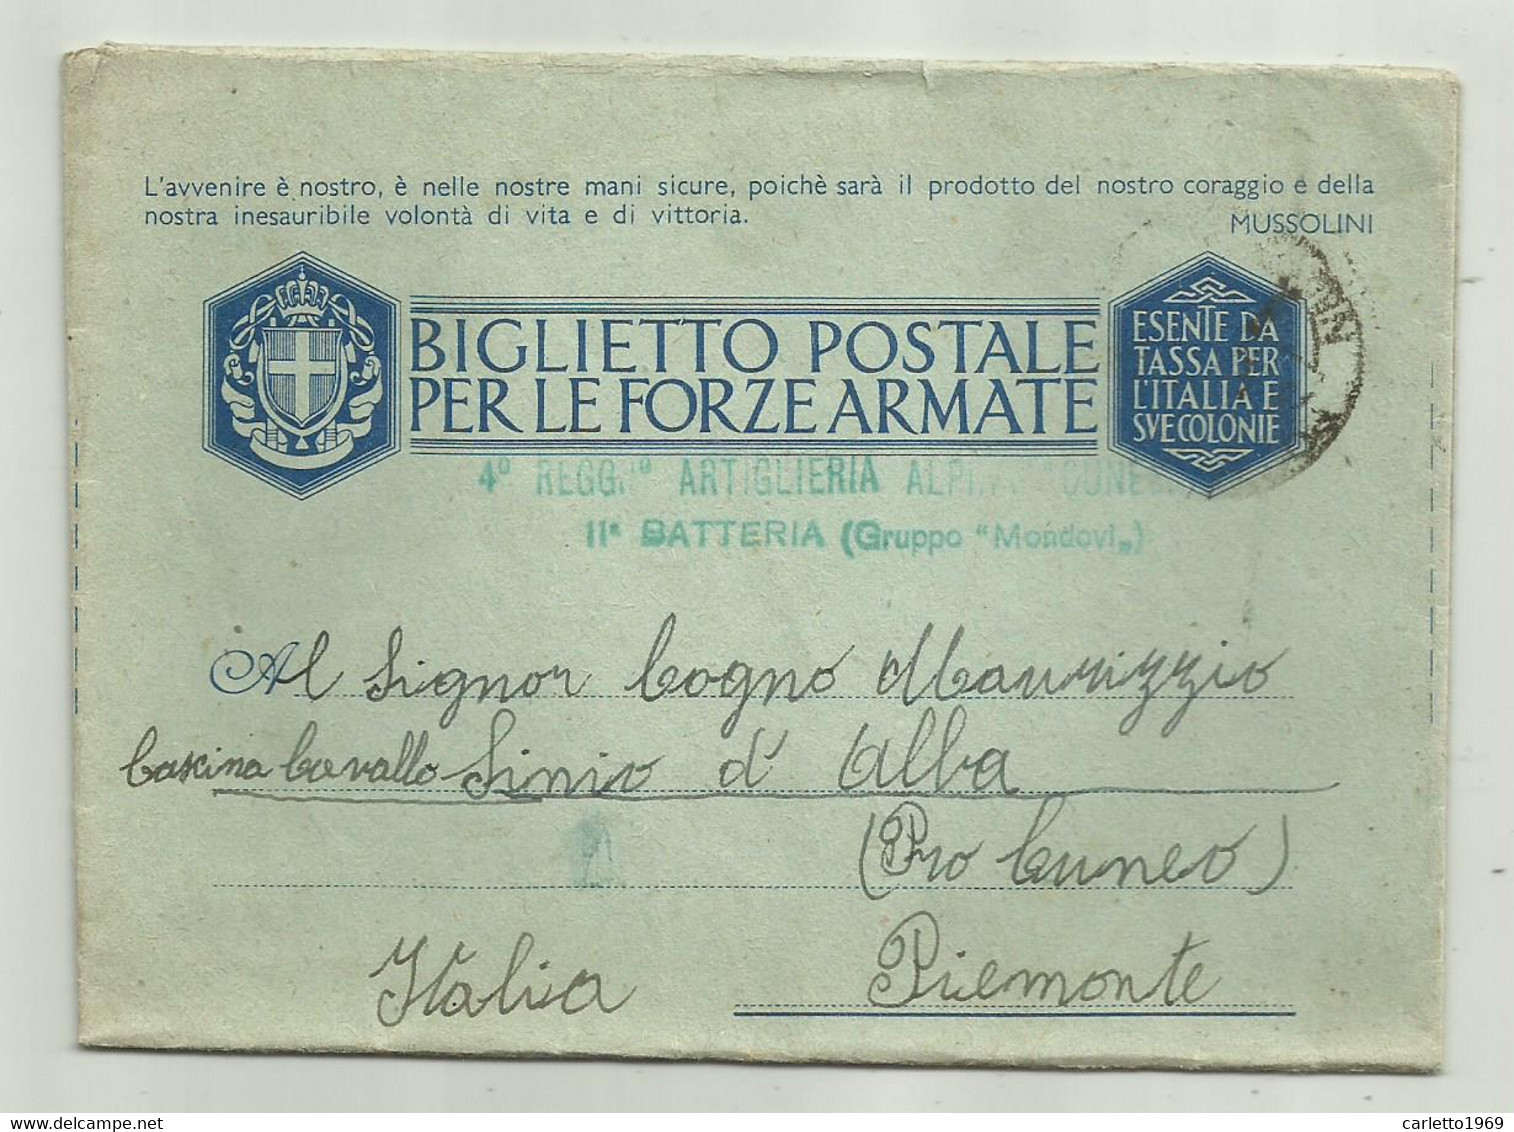 BIGLIETTO POSTALE FORZE ARMATE 4 REGG. ARTIGLIERIA ALPINI CUNEO 11a BATTERIA GRUPPO MONDOVI  1942 - Stamped Stationery